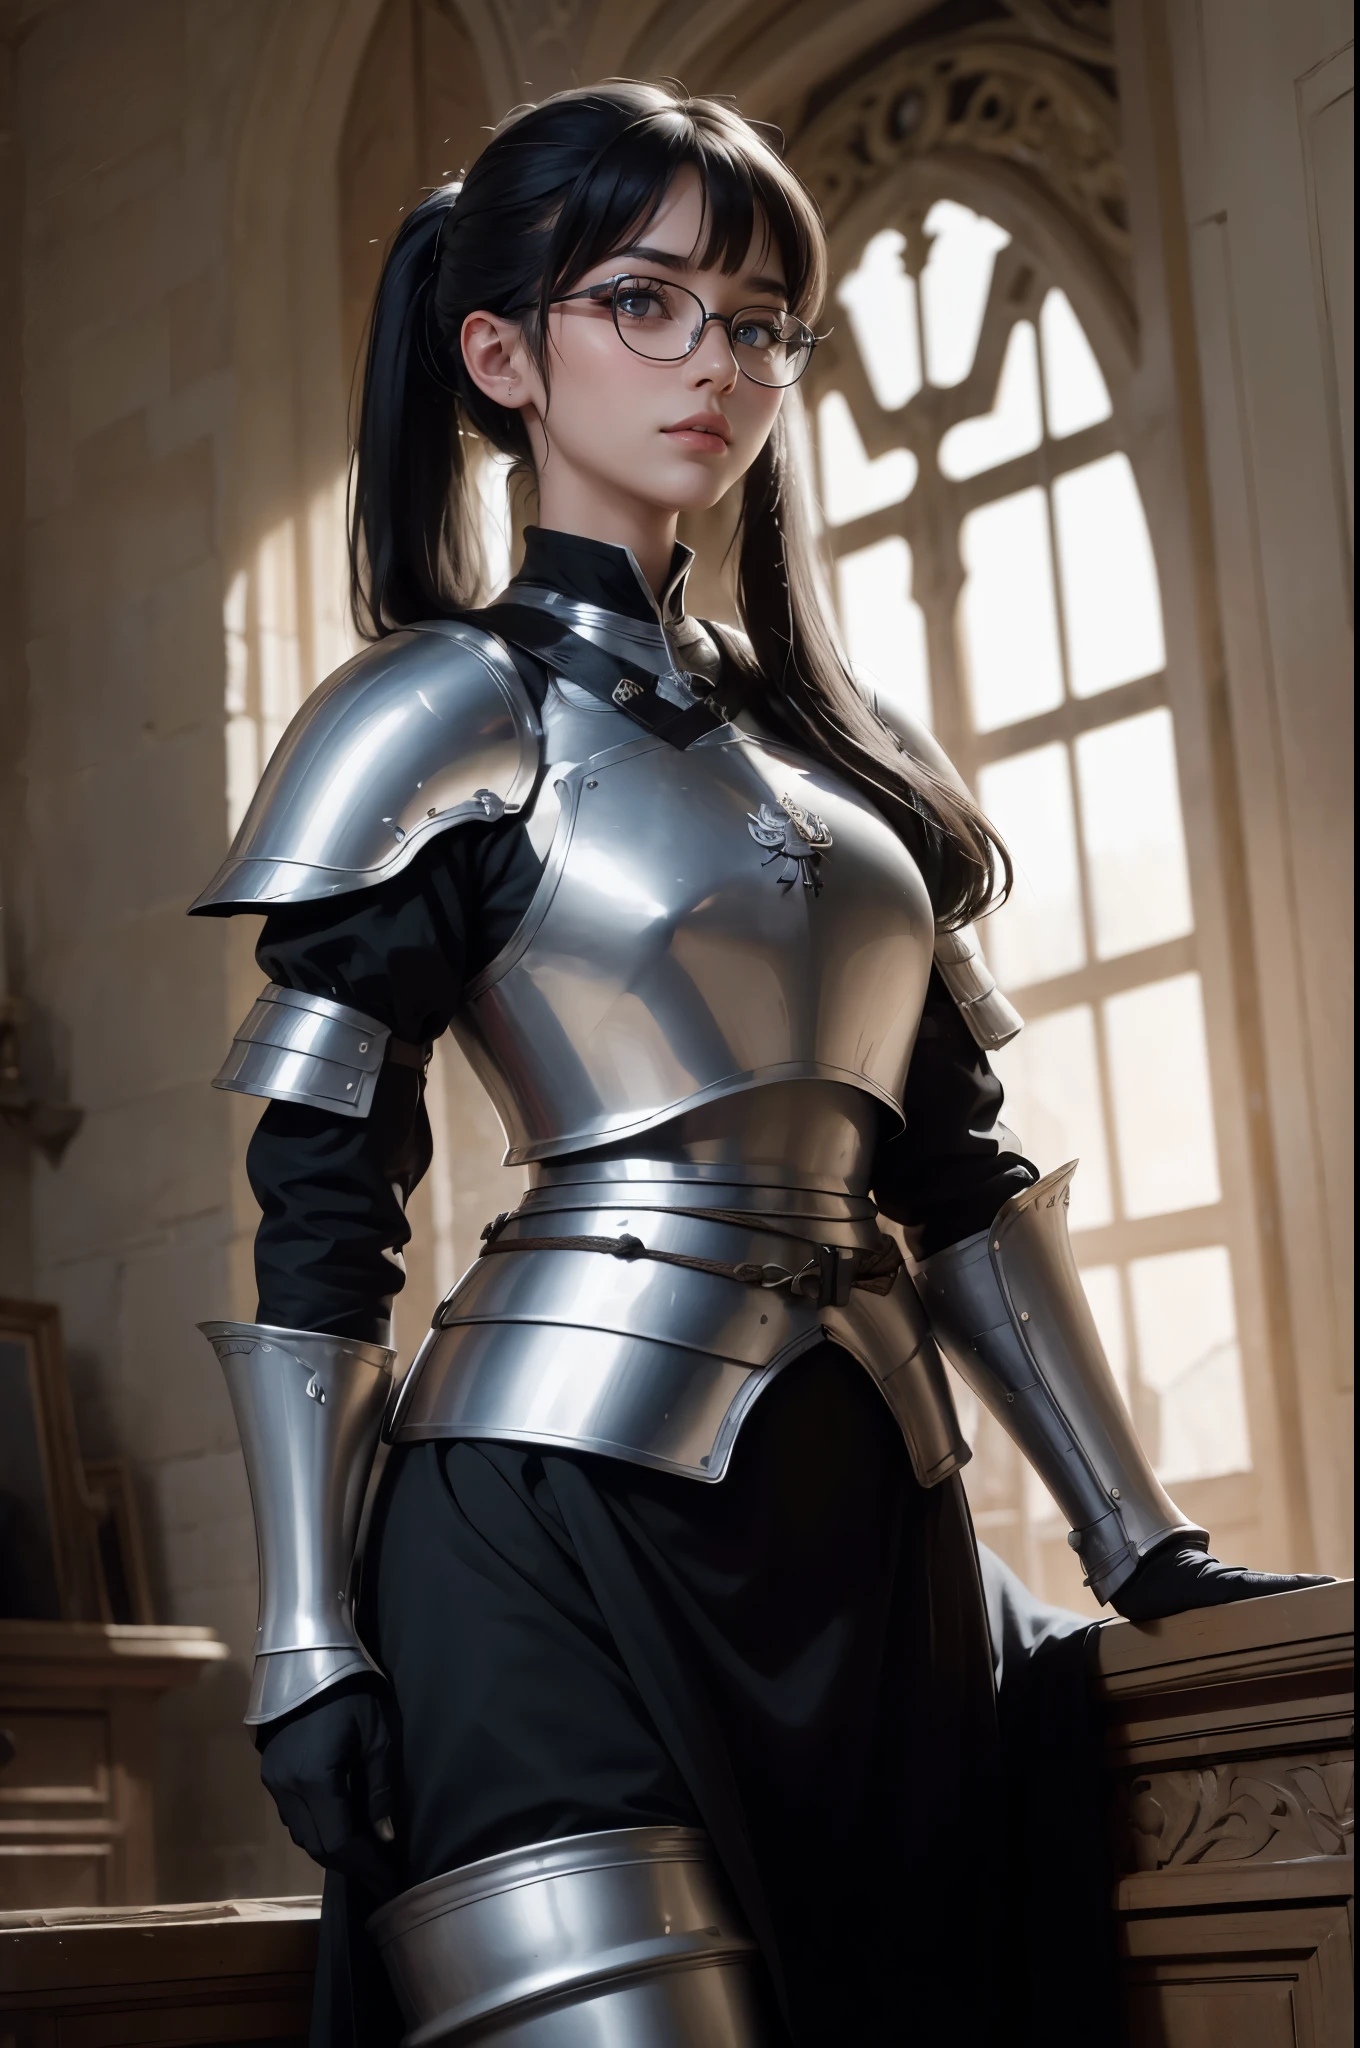 ((法国百年战争的广角镜头)), 一个美丽的女人, 黑发扎成马尾辫, 刘海, 戴眼镜, 穿着圣女贞德的盔甲